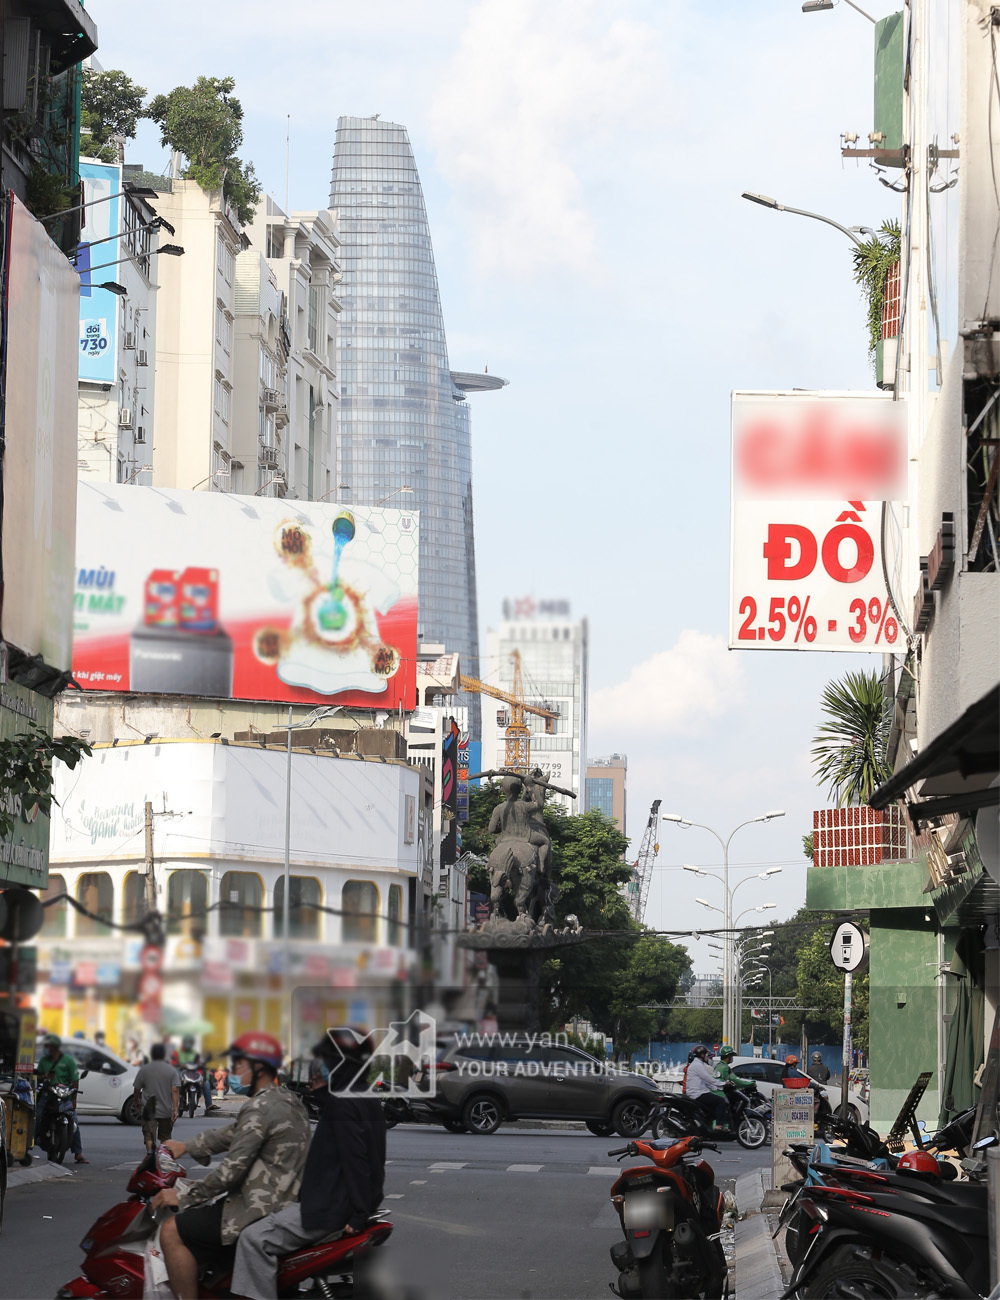  
Đường phố tại TP. Hồ Chí Minh trong đợt giãn cách xã hội từ ngày 31/5 đến 14/6.